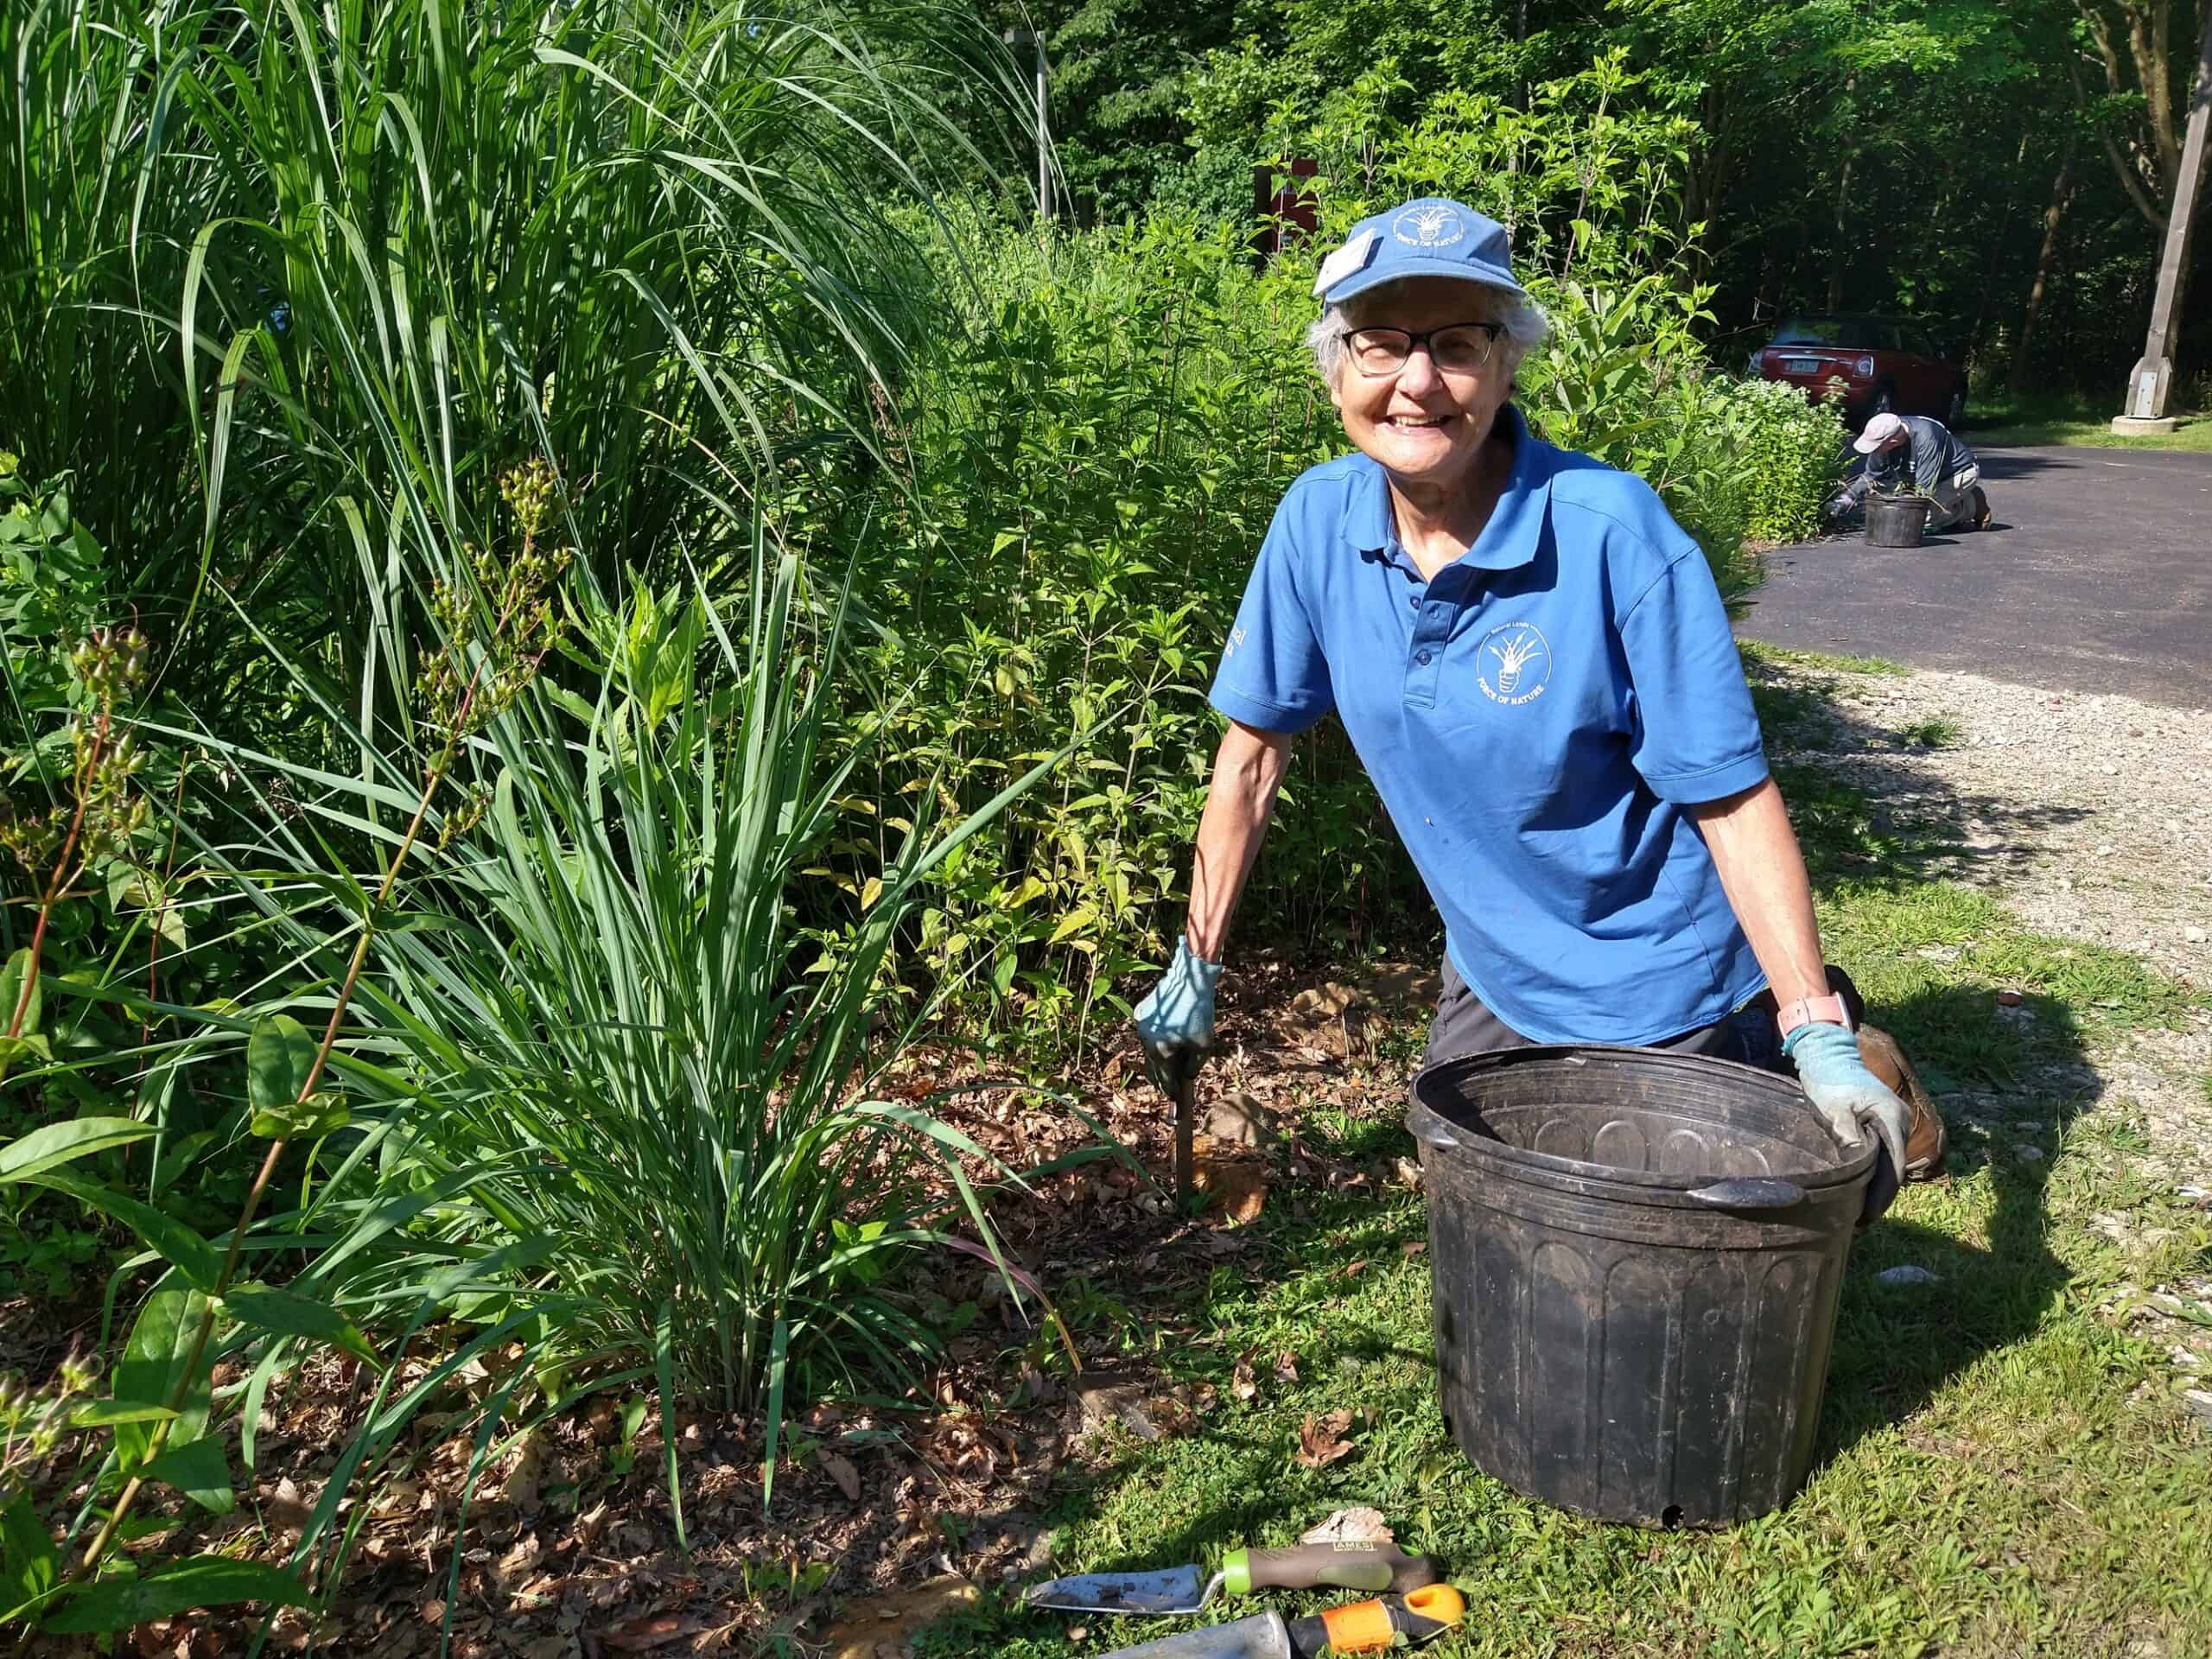 A volunteer in blue shirt, kneeling in garden, pulling weeds.